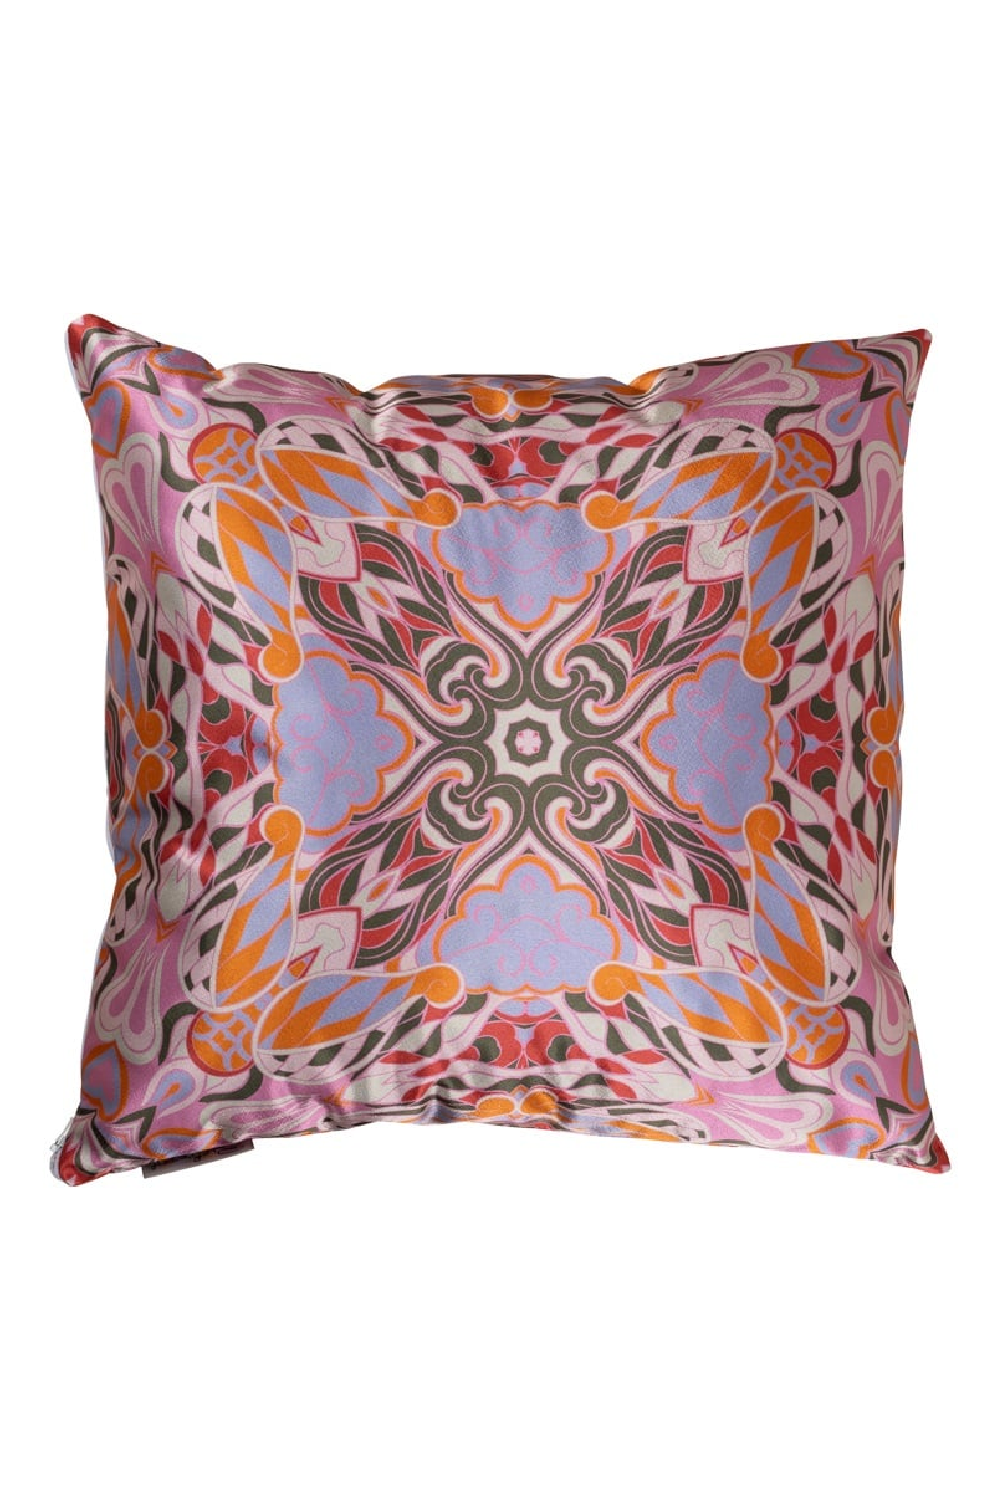 Pink Paisley Pillow | OROA Melisa | Oroa.com